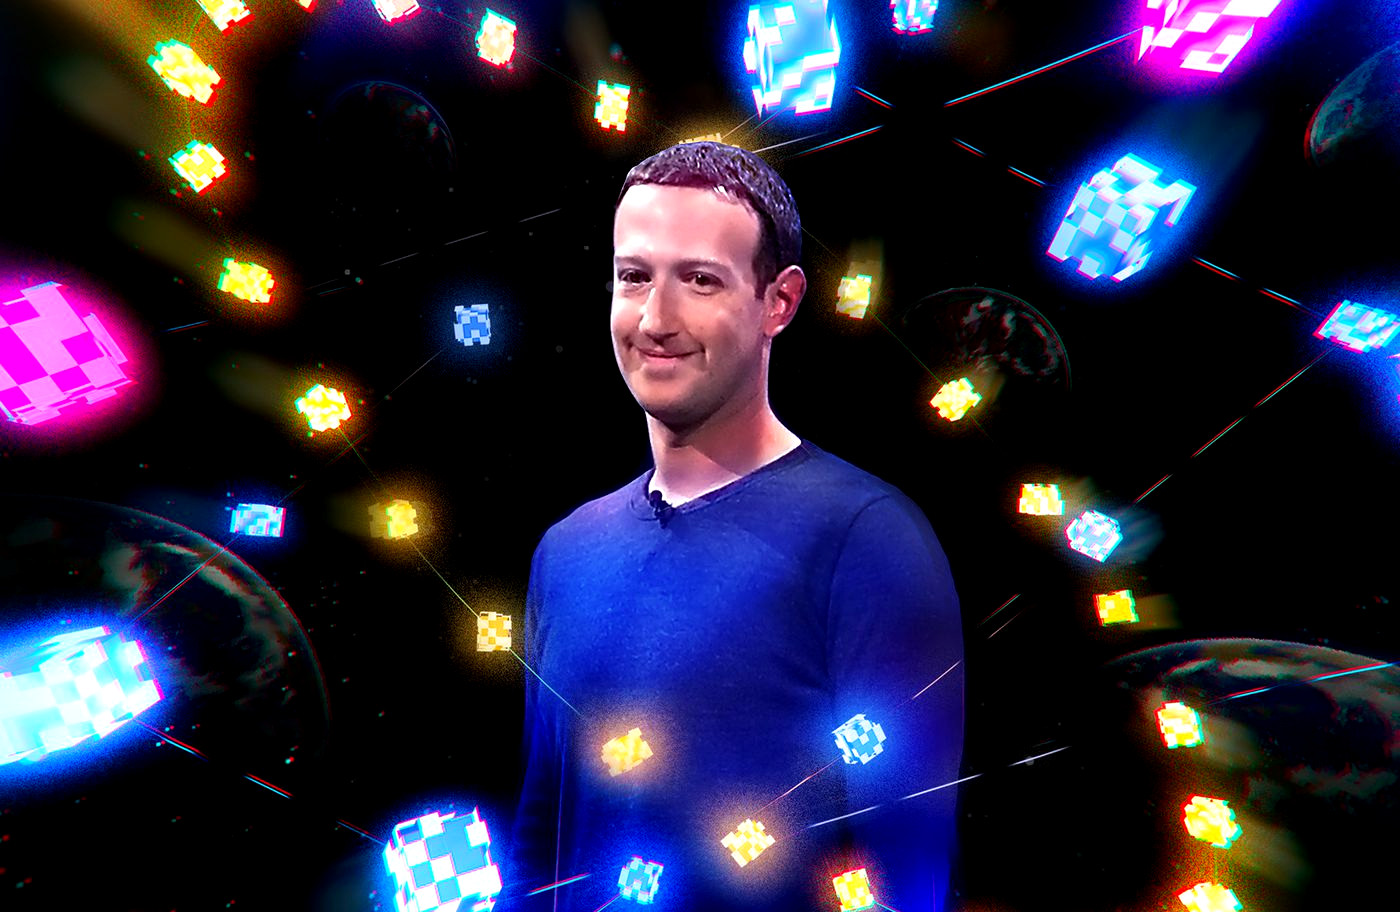 Το Facebook αλλάζει: Ο Ζάκεμπεργκ δημιουργεί το «metaverse», τον νέο εικονικό κόσμο